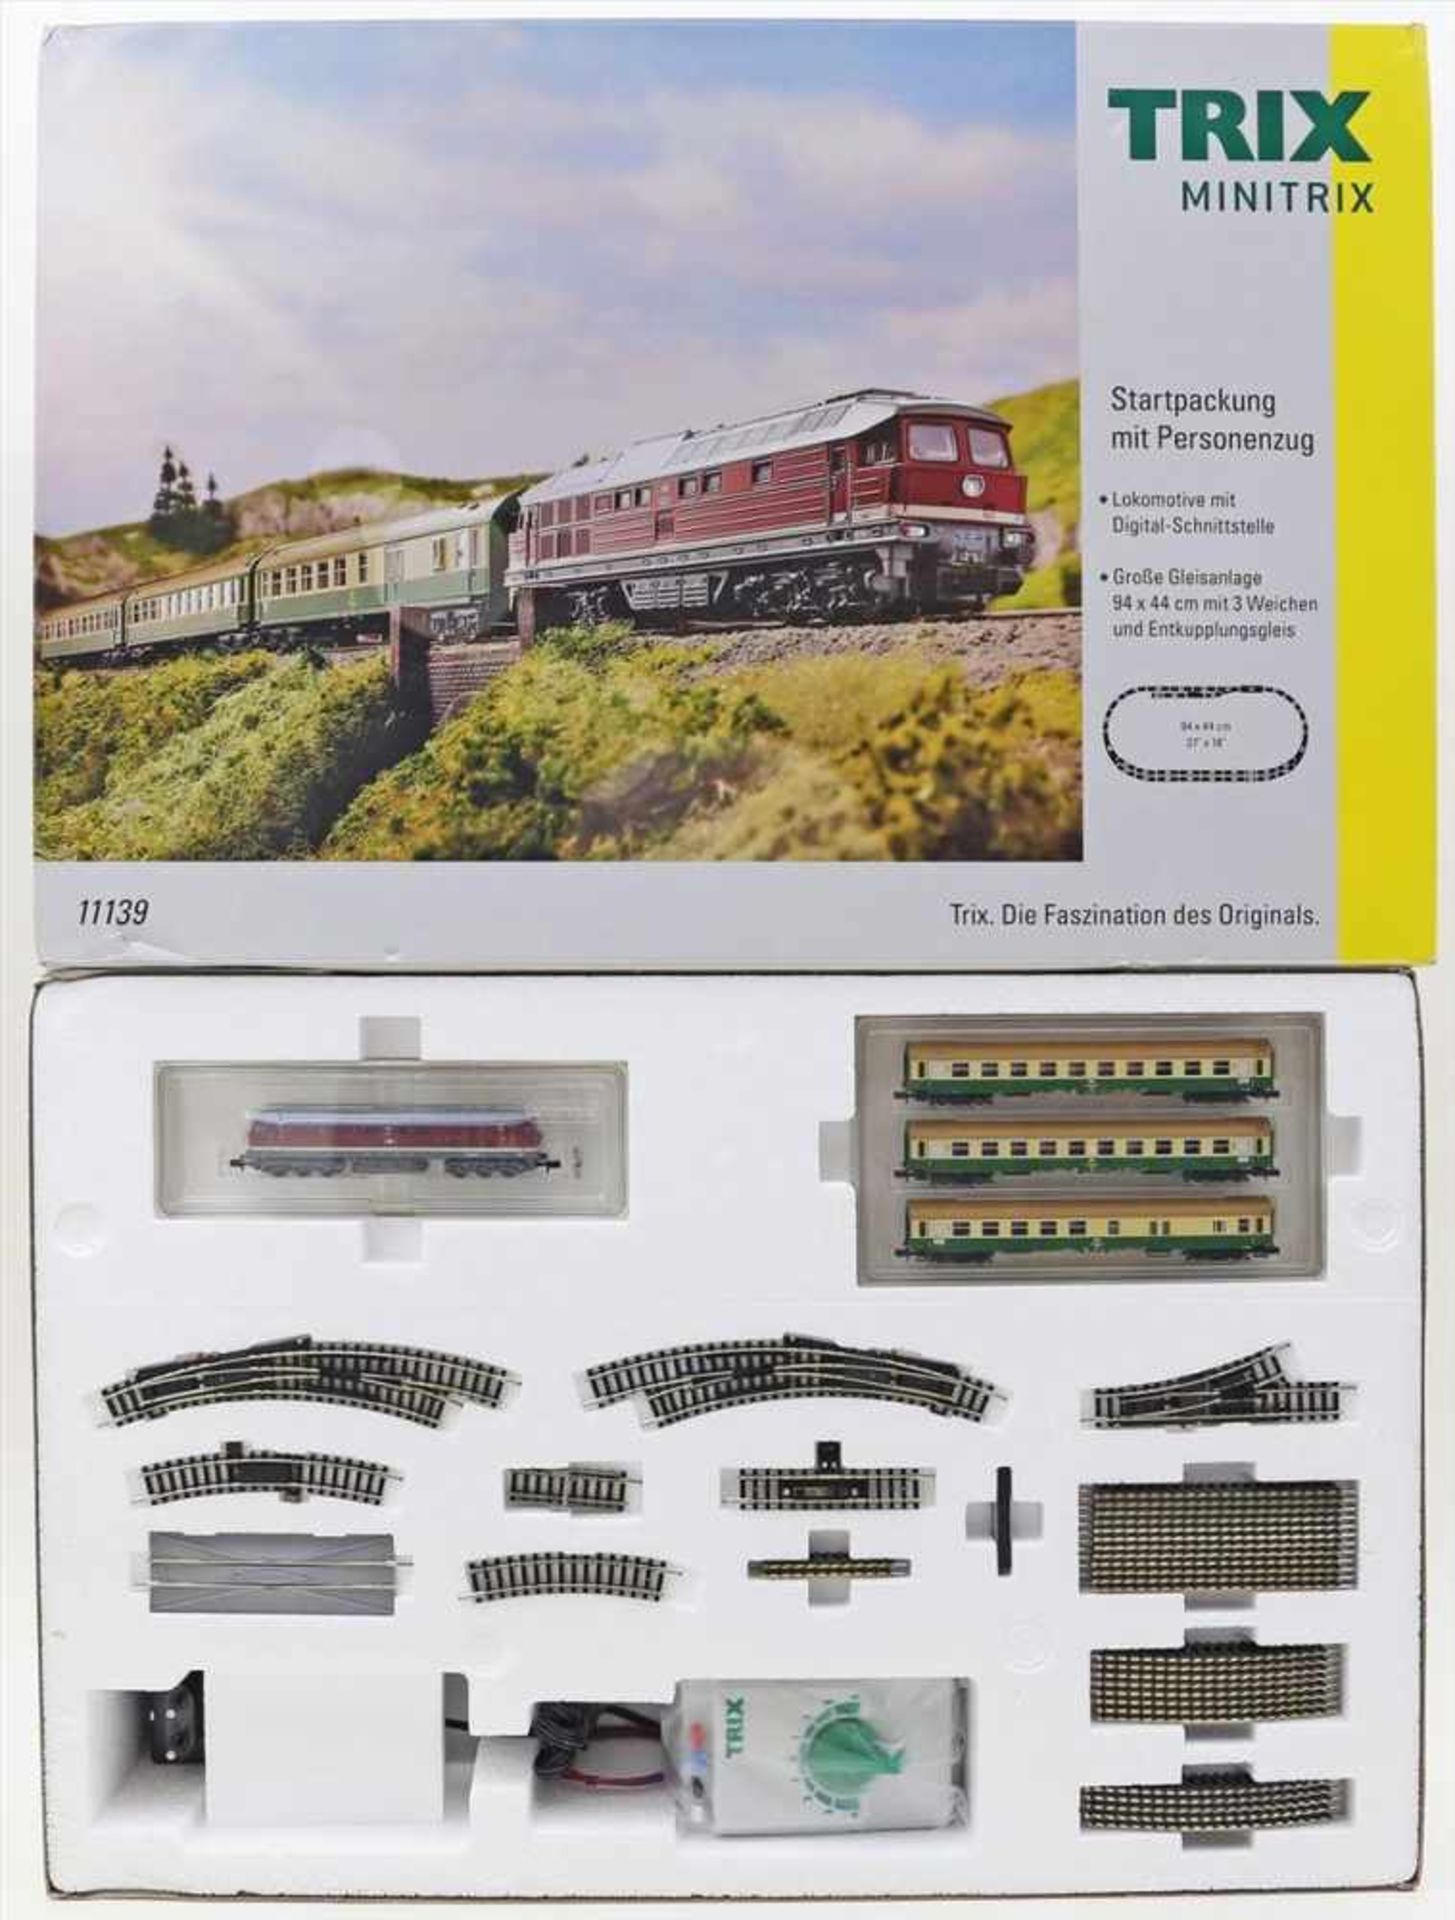 Startpackung mit Personenzug, Minitrix Spur N.Art.-Nr. 11137, Funktion der Lok nicht geprüft.